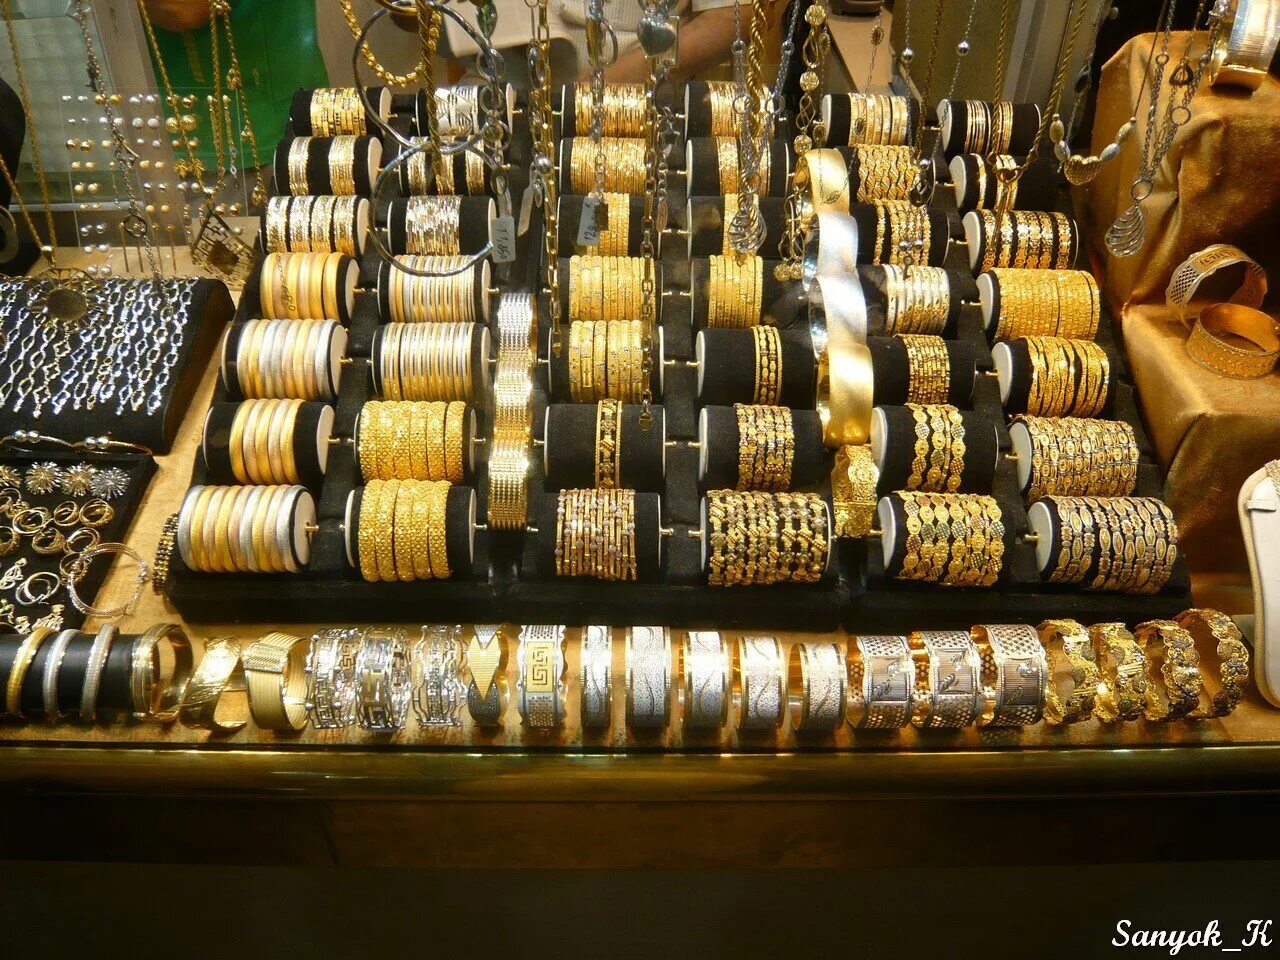 Рынок золота сегодня. Ювелирные украшения Ереван золотой рынок. Турецкое золото. Иранские золотые украшения. Армянский рынок золота.